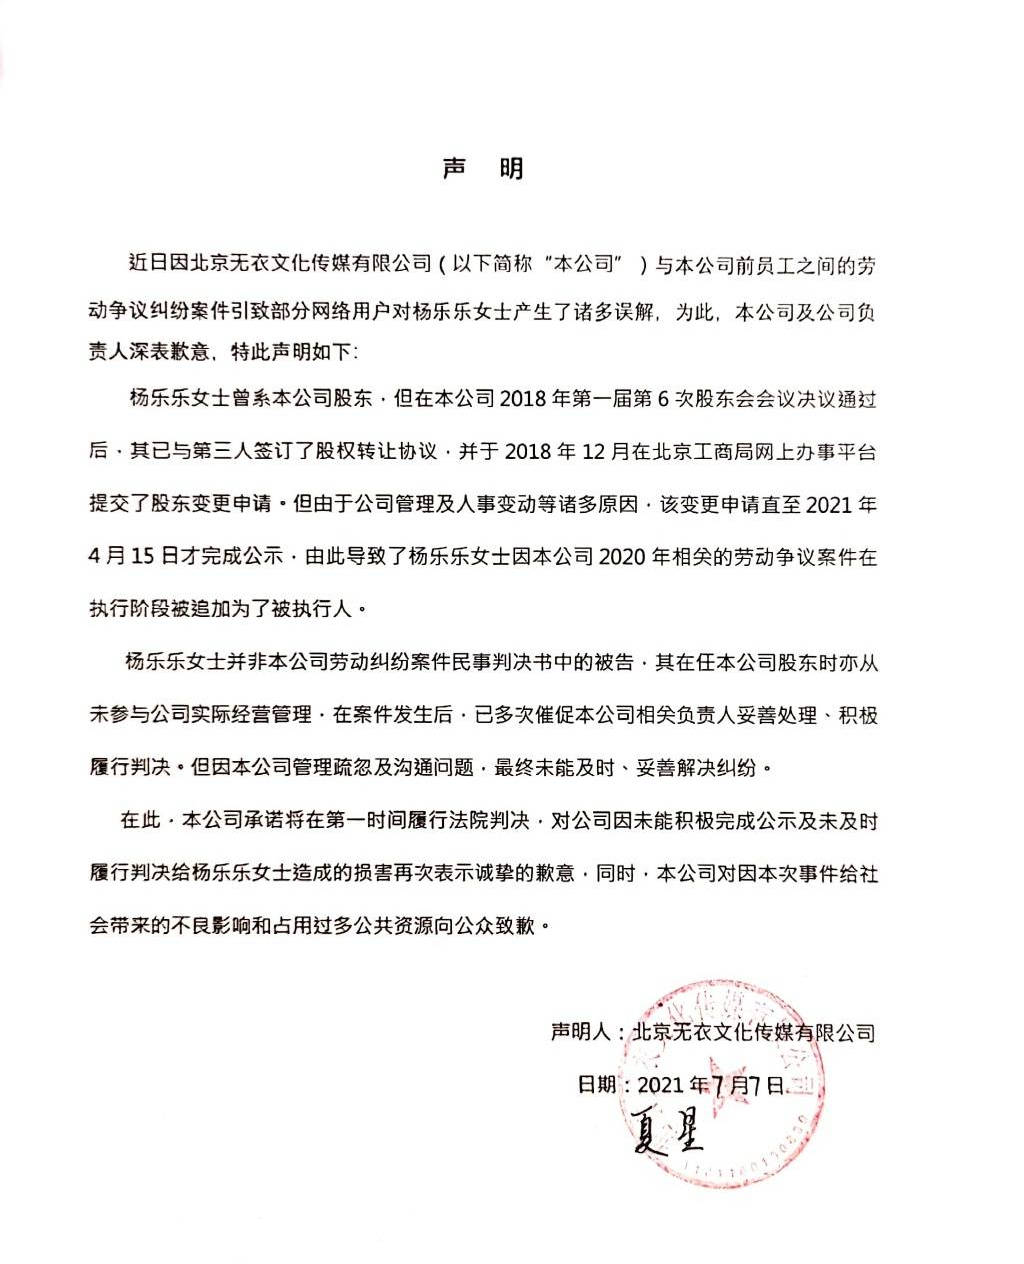 杨乐乐被执行公司声明：称其2018年已提交股东变更申请